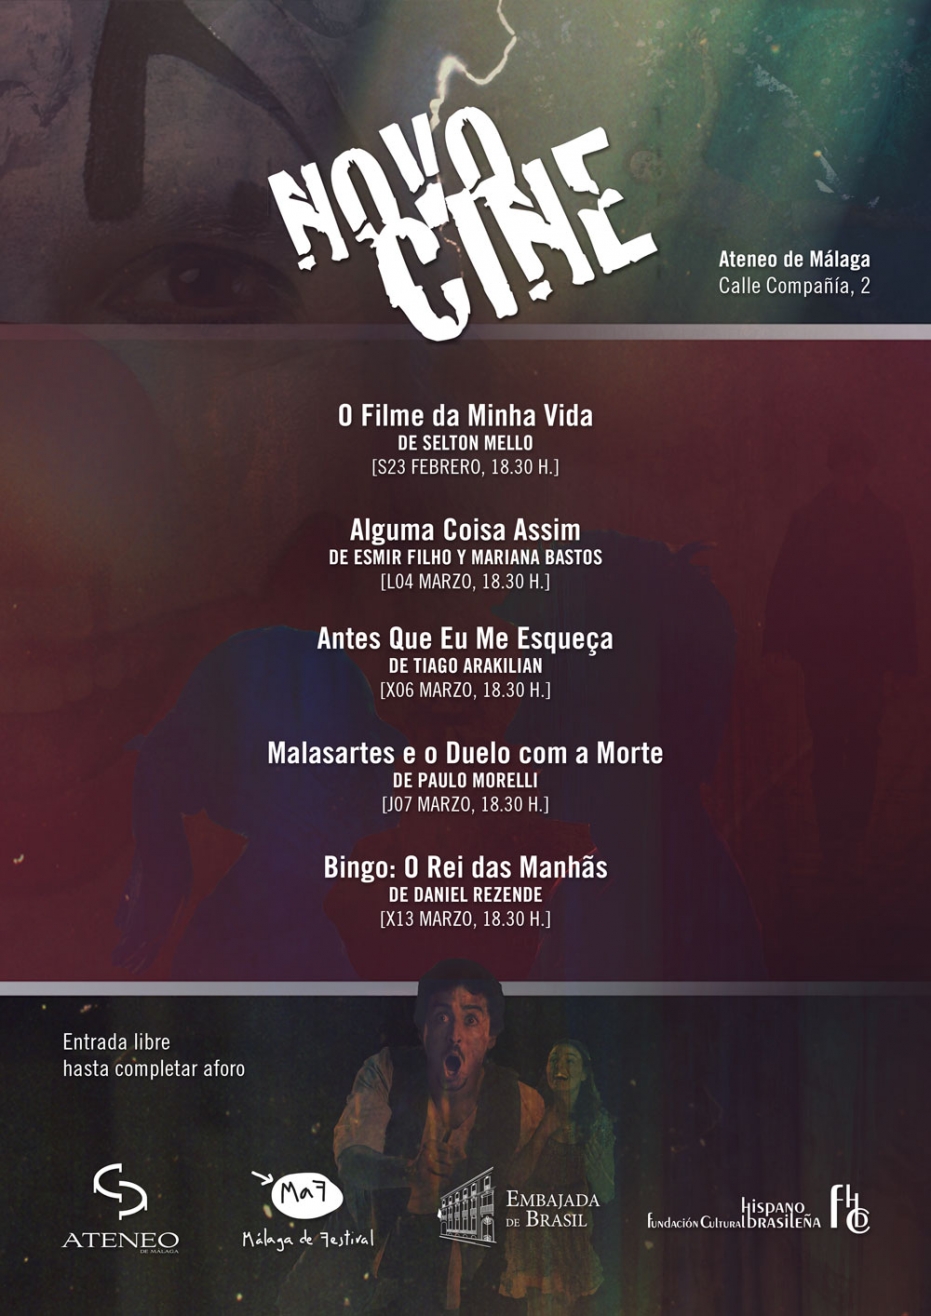 II Ciclo de Cine Novocine: proyección de Antes Que Eu Me Esqueça, de Tiago Arakilian. En colaboración con la Embajada de Brasil y la Fundación Cultural Hispano Brasileña